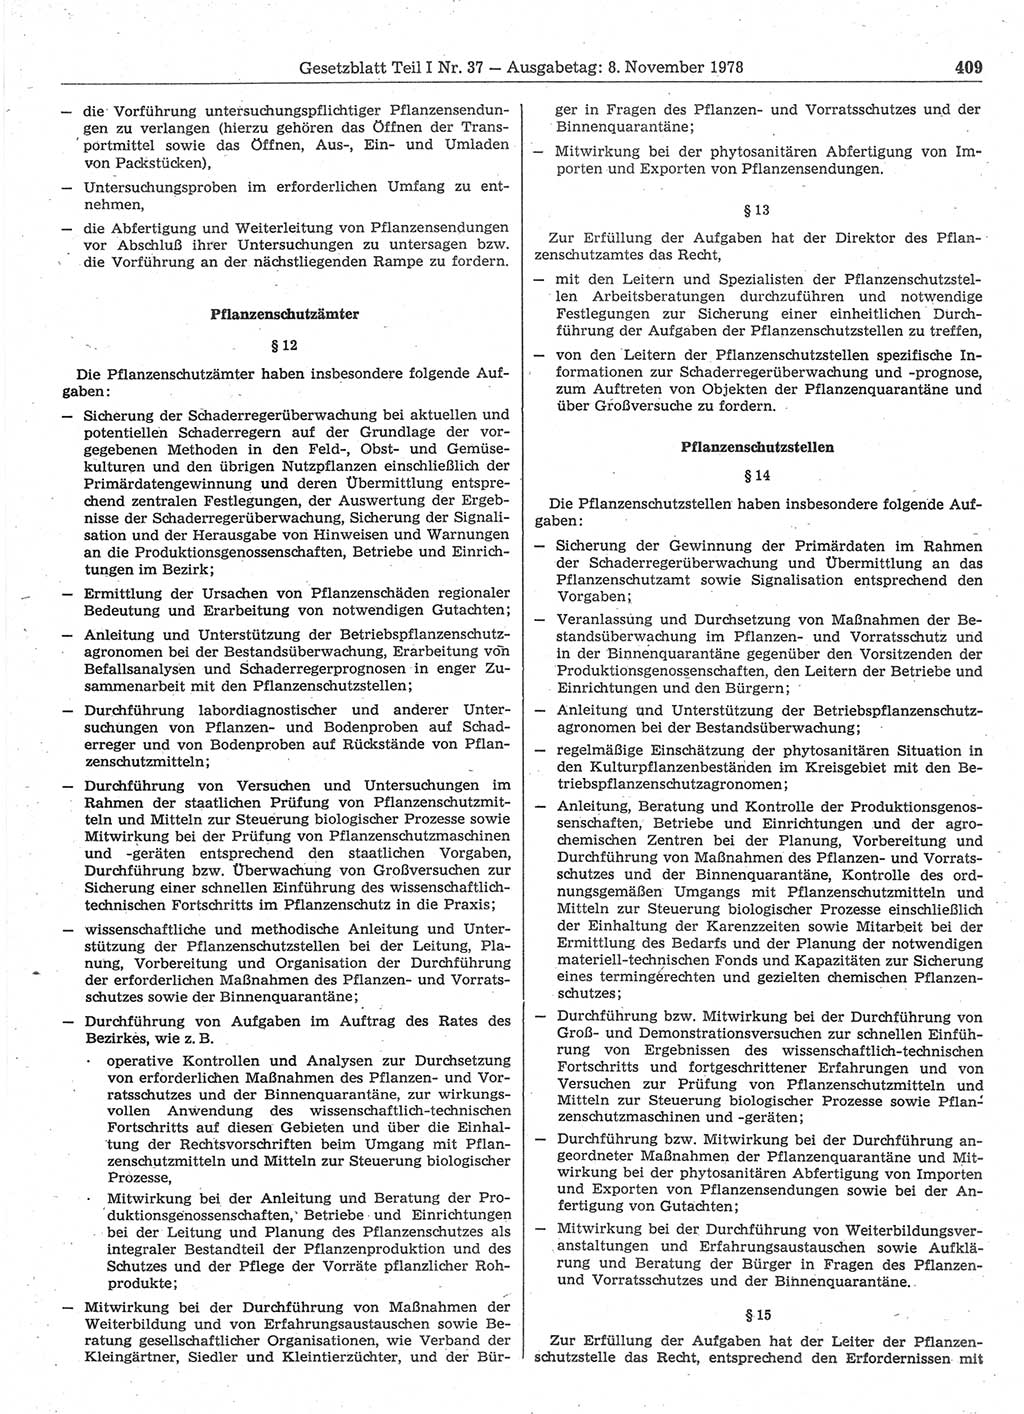 Gesetzblatt (GBl.) der Deutschen Demokratischen Republik (DDR) Teil Ⅰ 1978, Seite 409 (GBl. DDR Ⅰ 1978, S. 409)